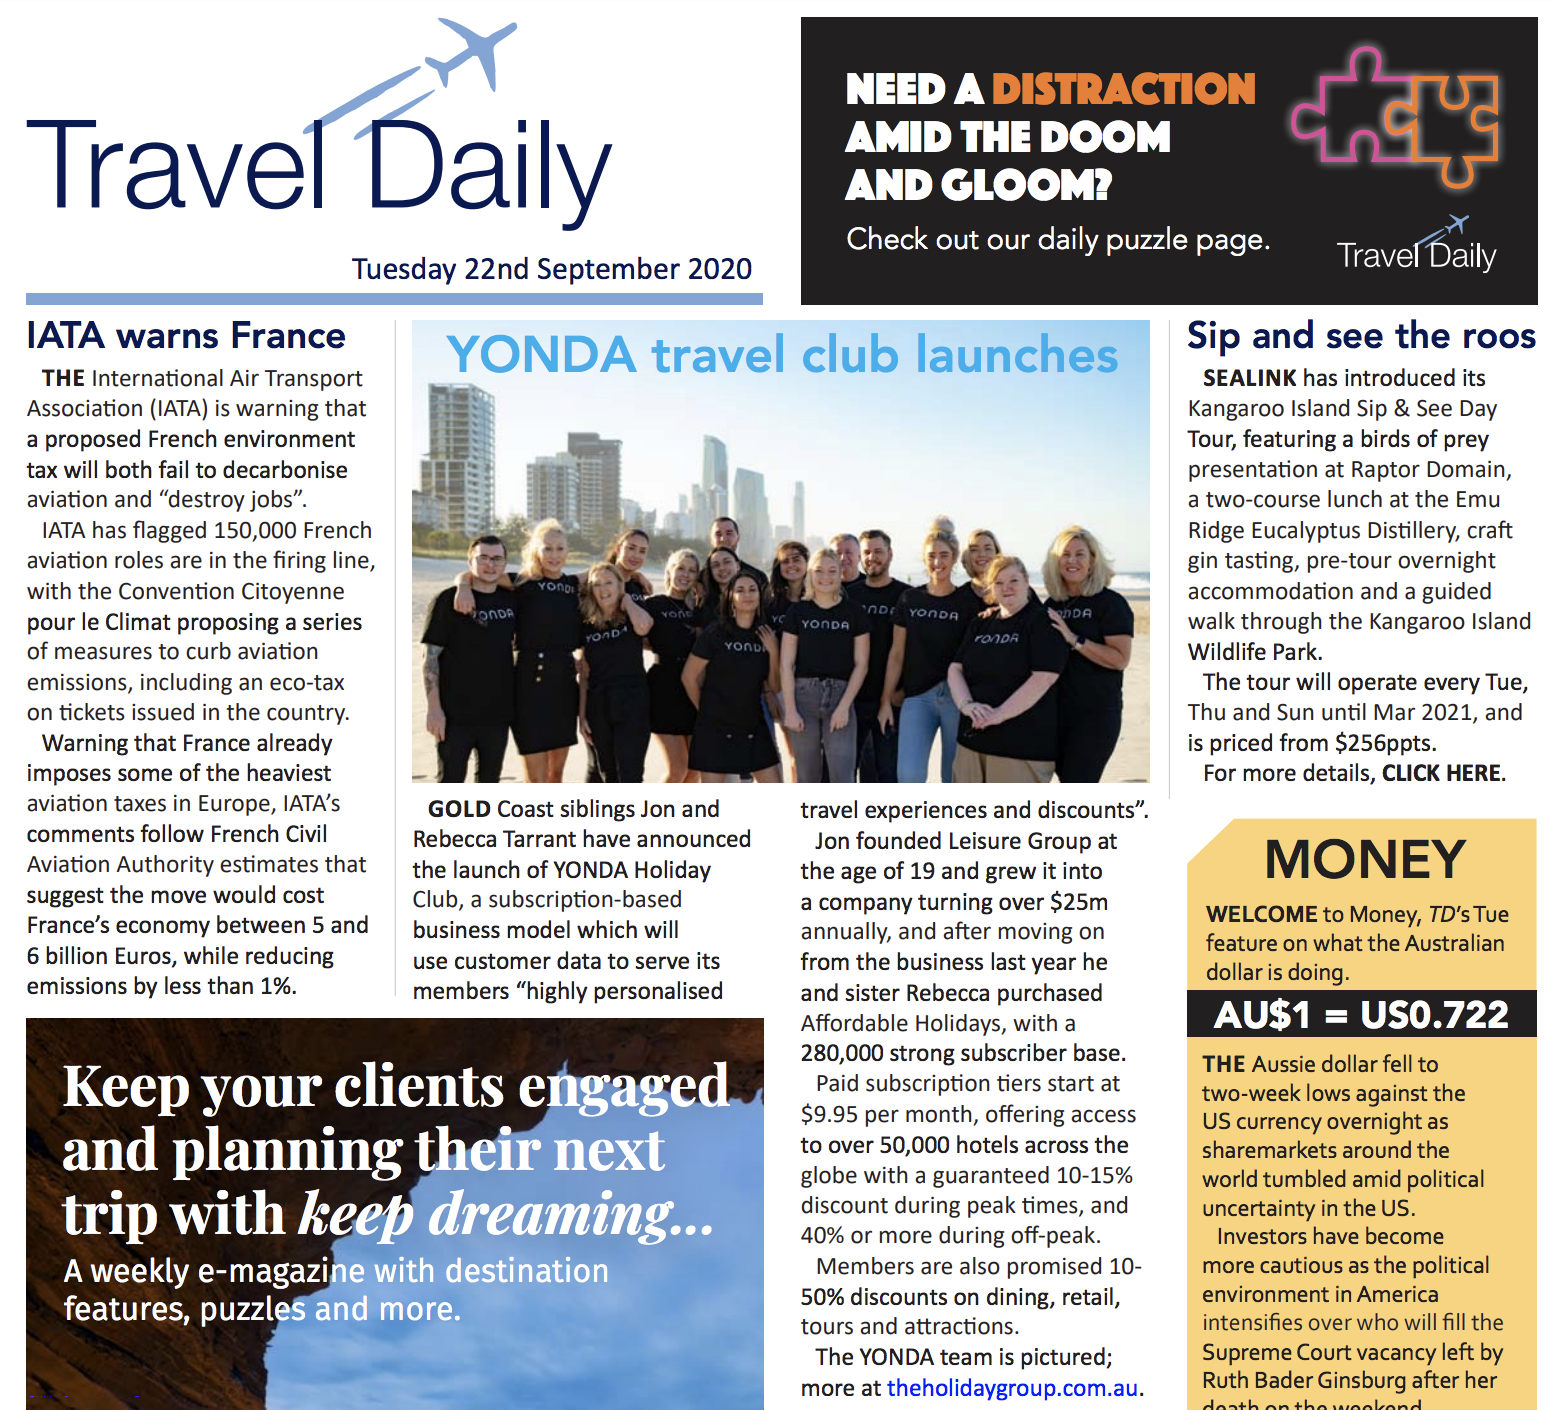 YONDA Travel Club Launches